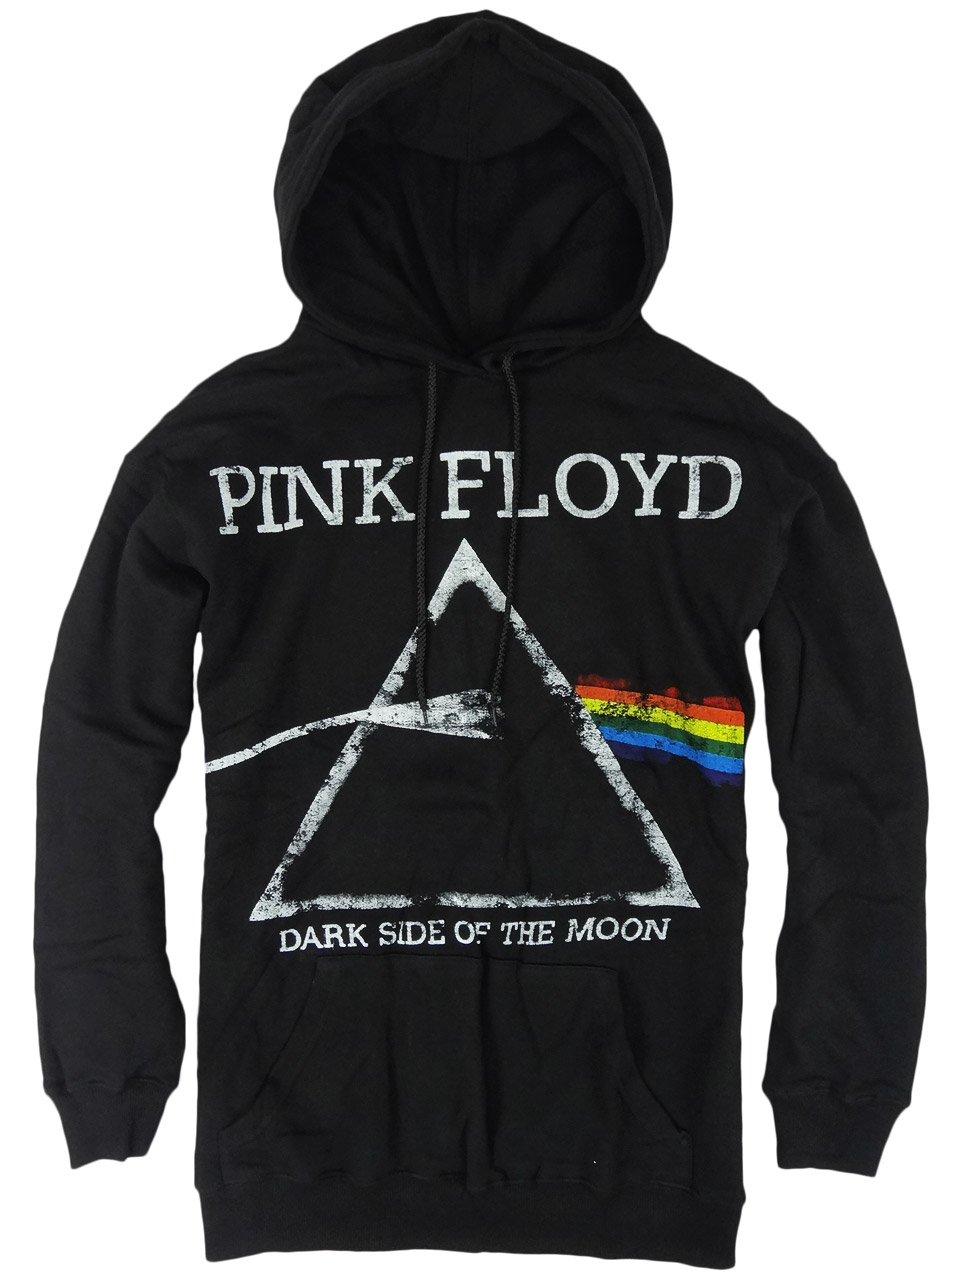 プルオーバー ロックパーカー Pink Floyd ピンク フロイド DARK SIDE OF THE MOON カラー:ブラック gtp-0027